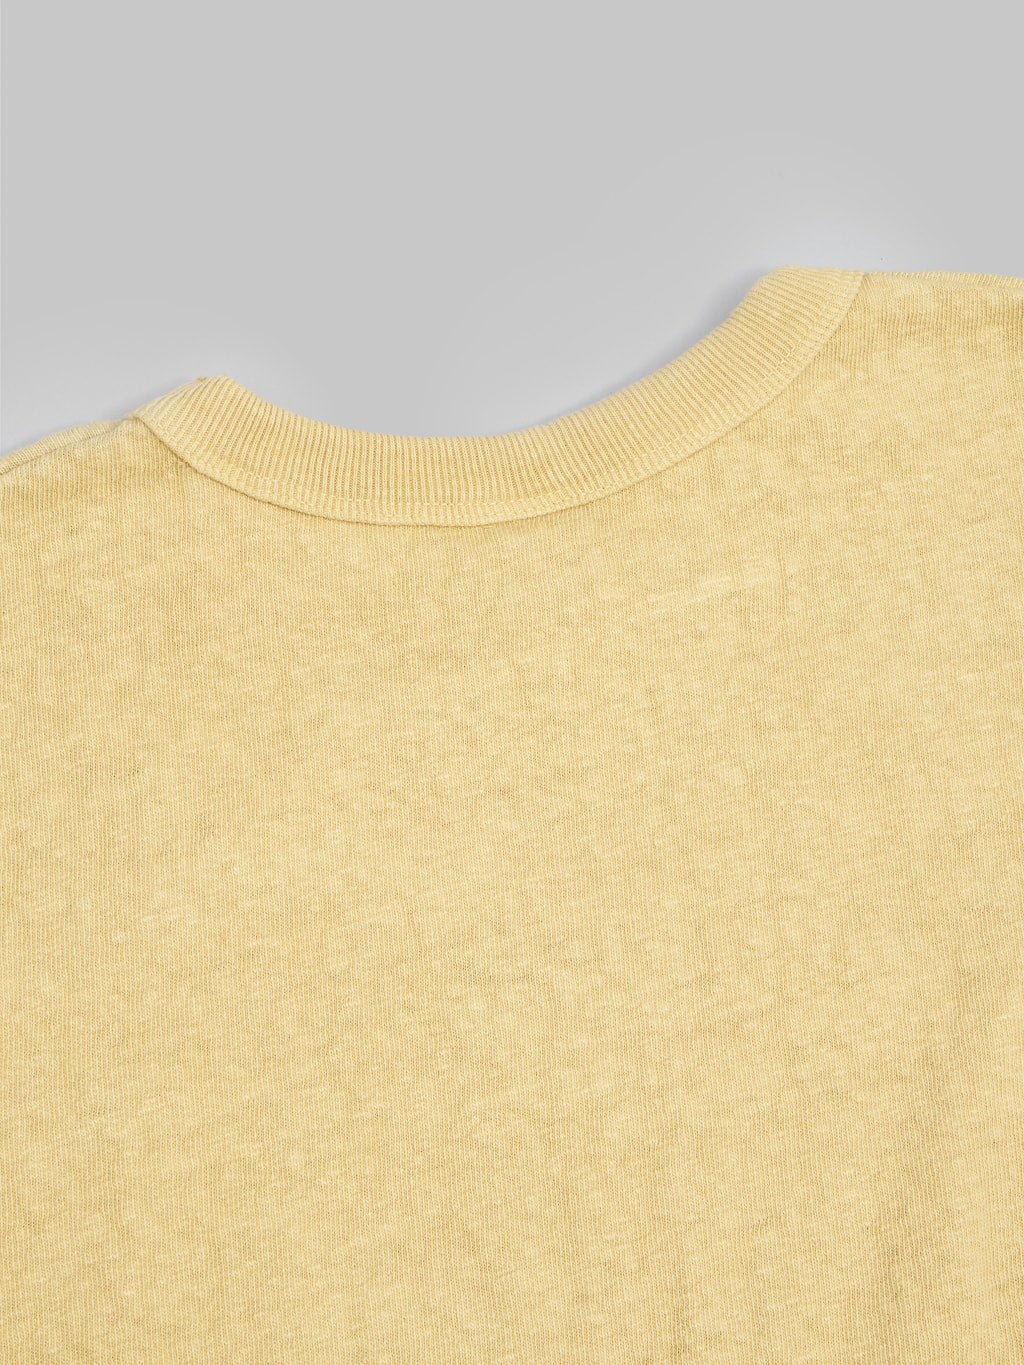 UES N8 Slub Nep Short Sleeve TShirt yellow stitching